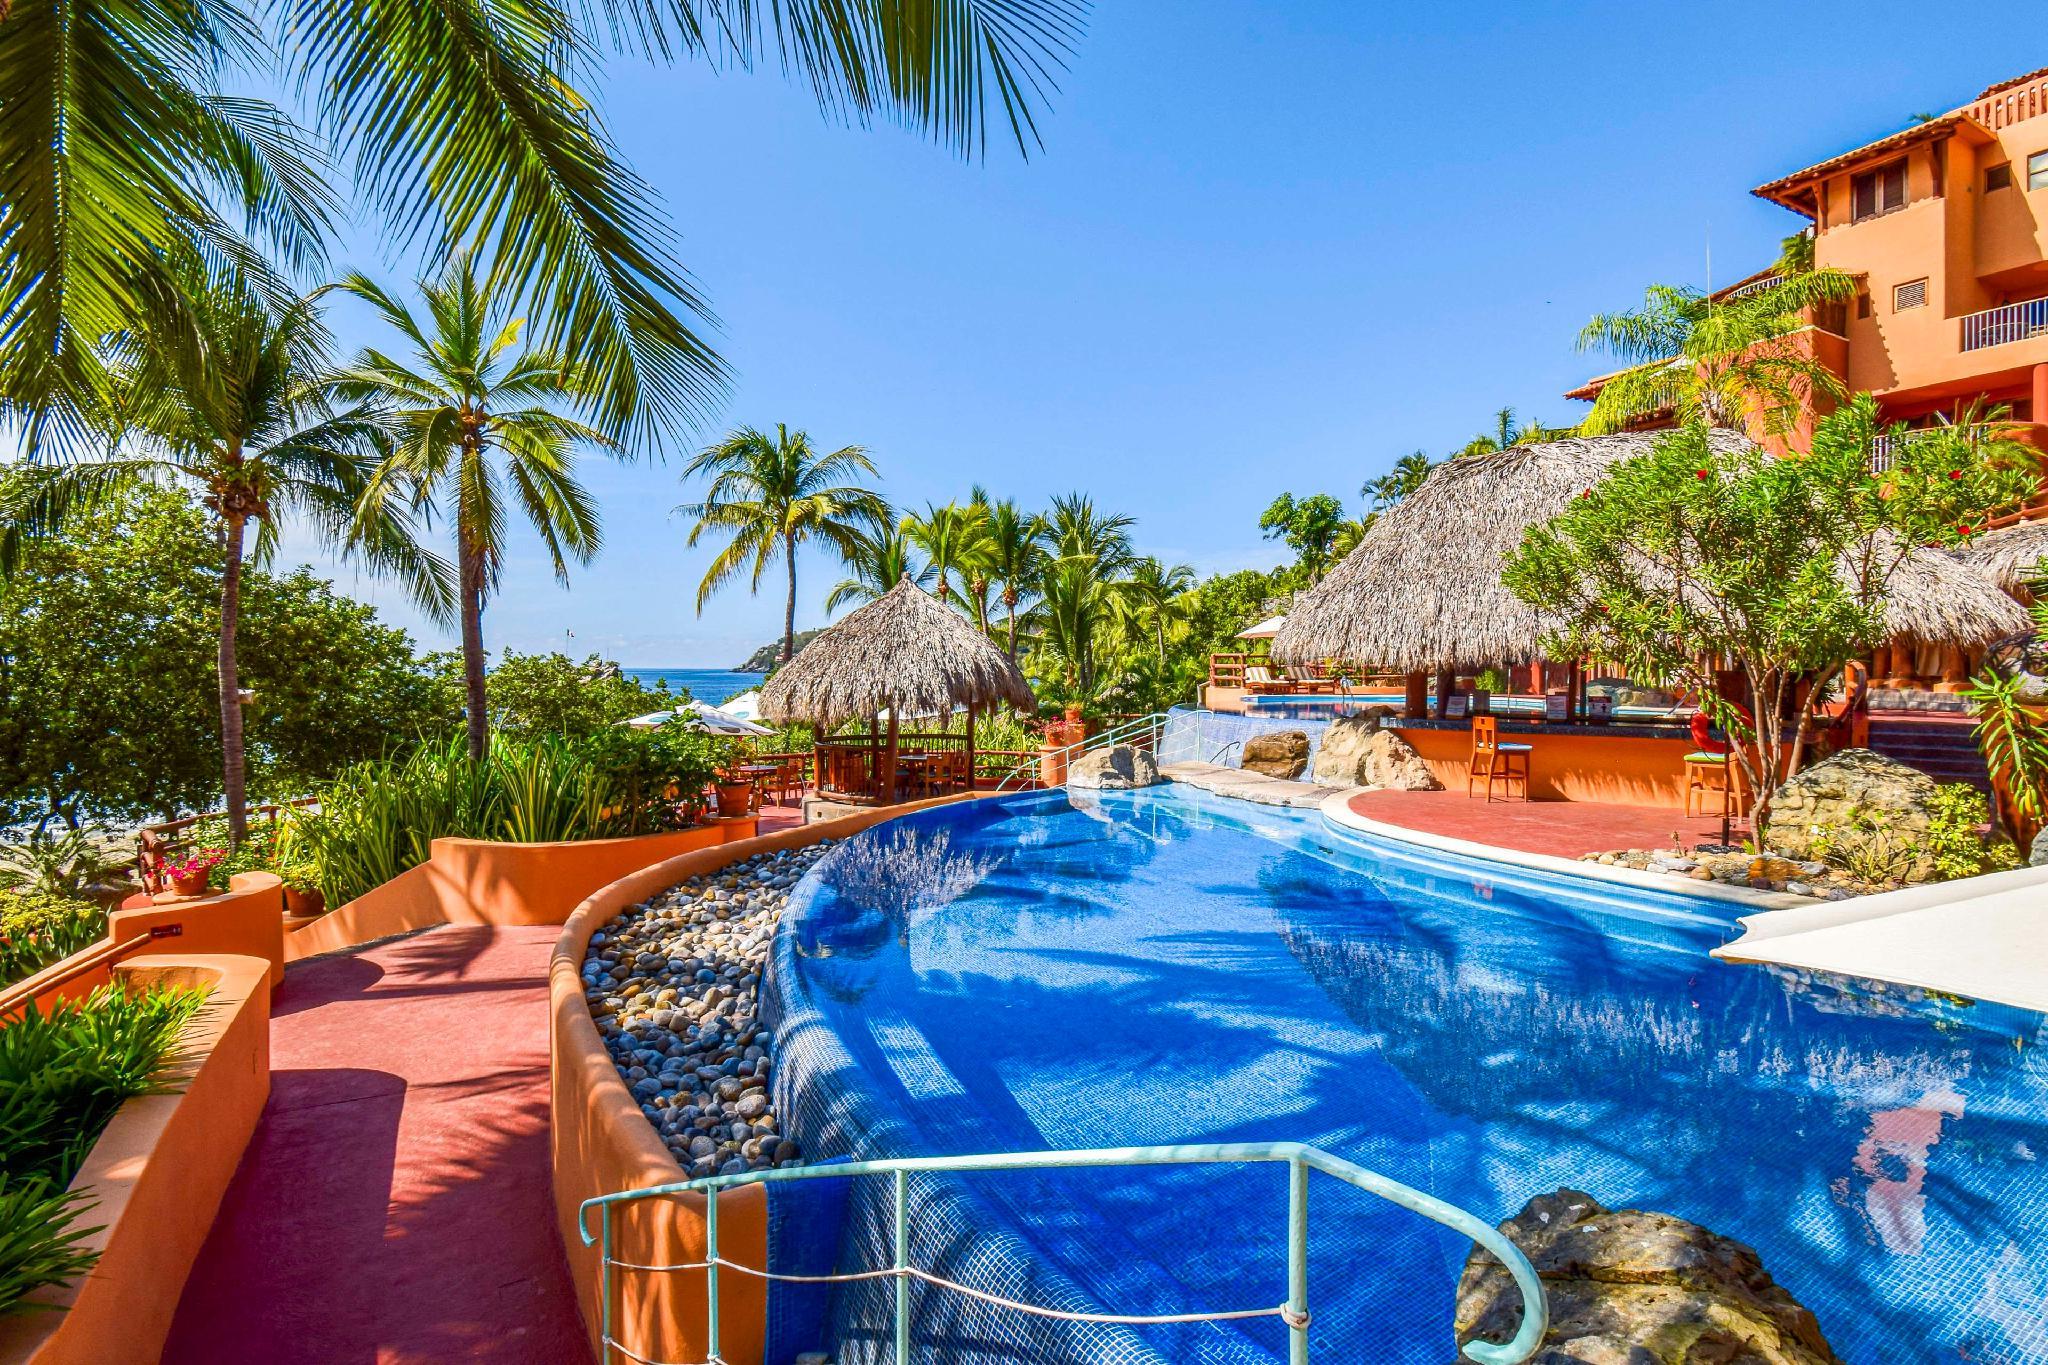 Hilton Grand Vacations Club Zihuatanejo - Ixtapa